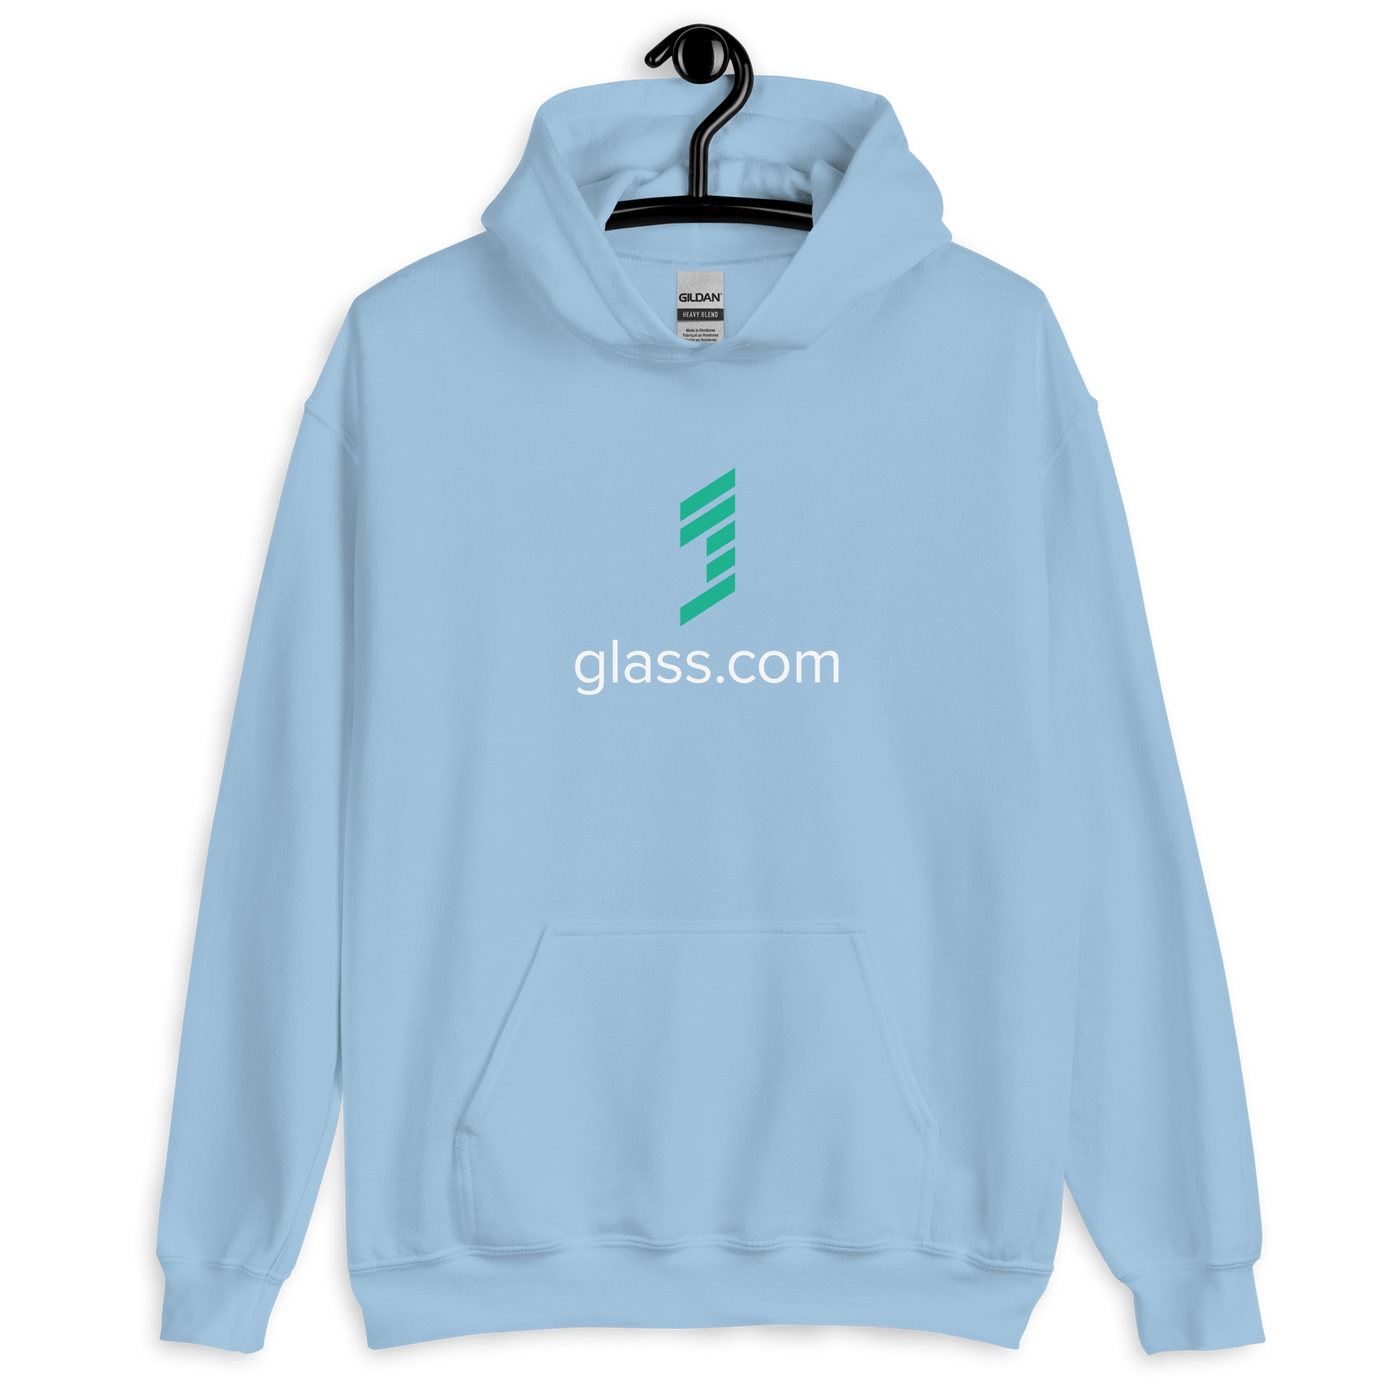 Glass.com - Gildan 18500 Hoodie